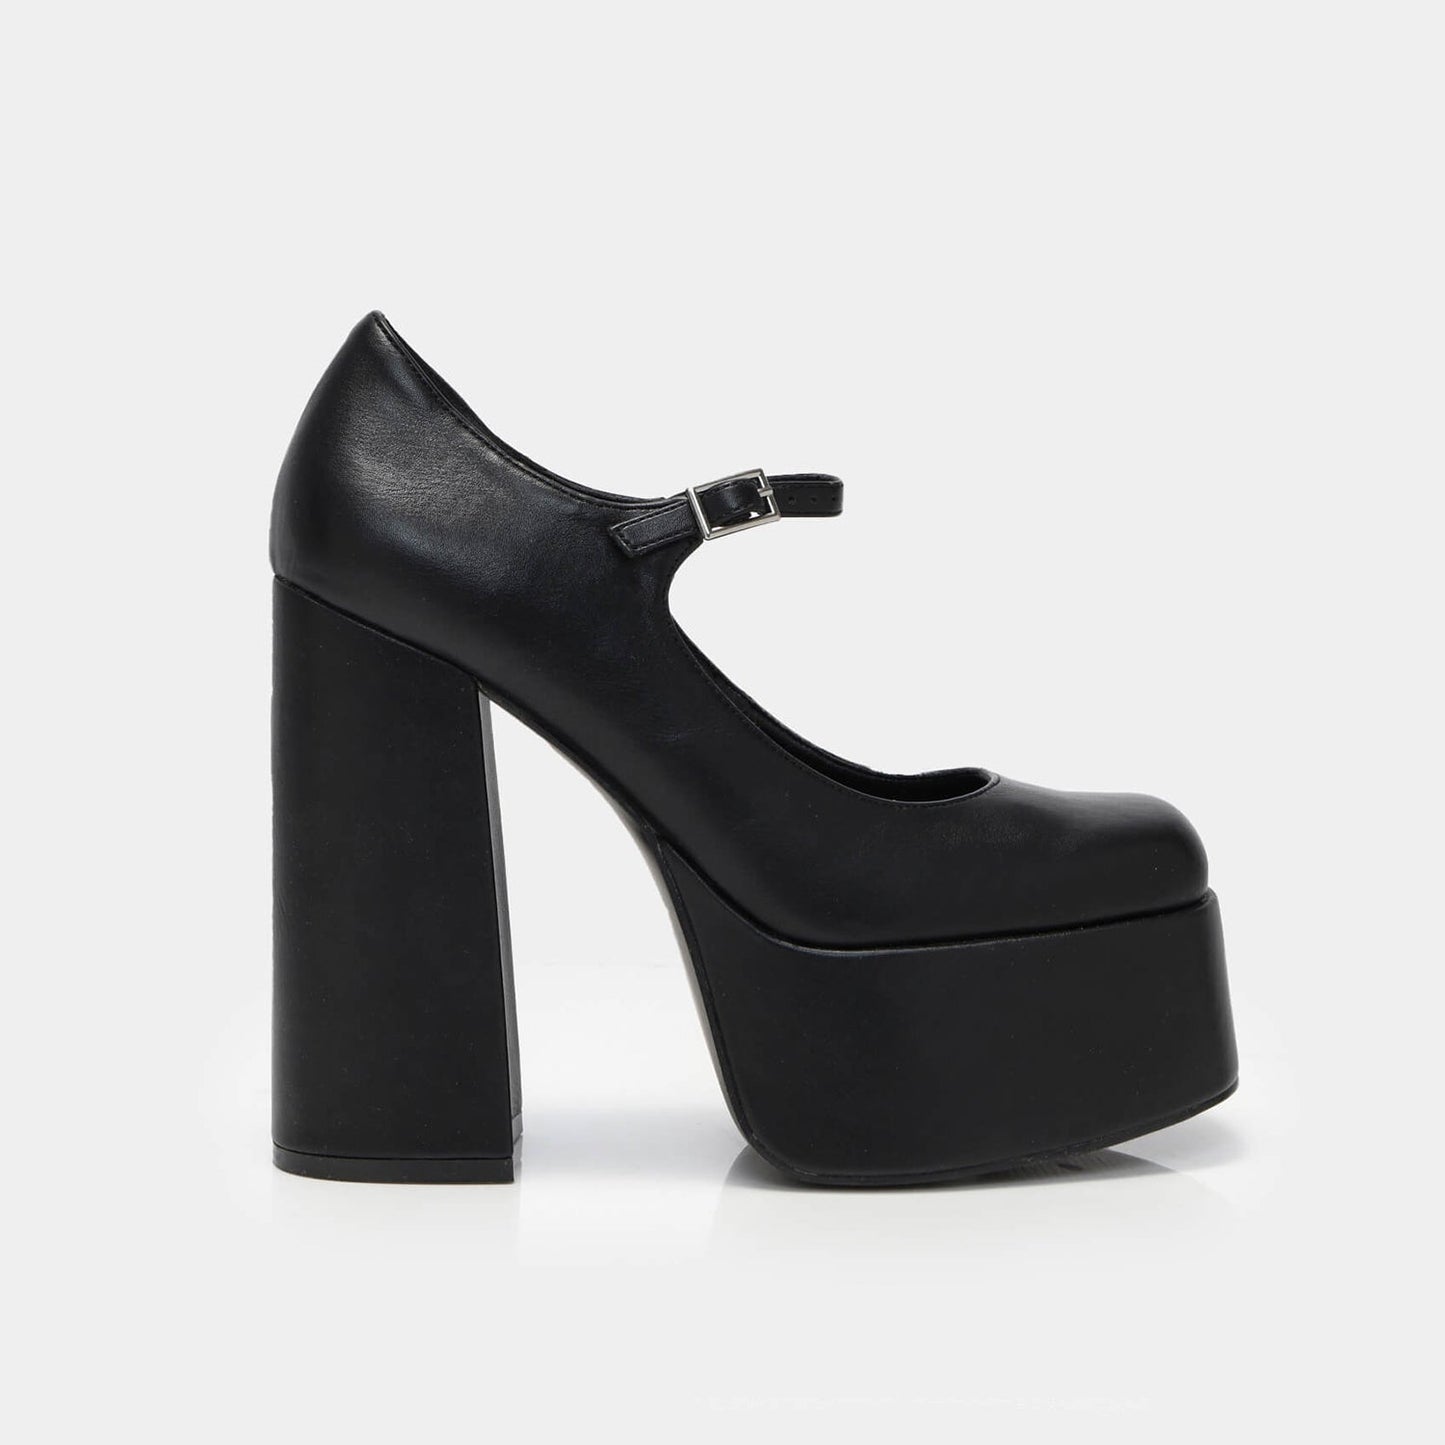 Darkbloom Black Platform Heels - Shoes - KOI Footwear - Black - Side View